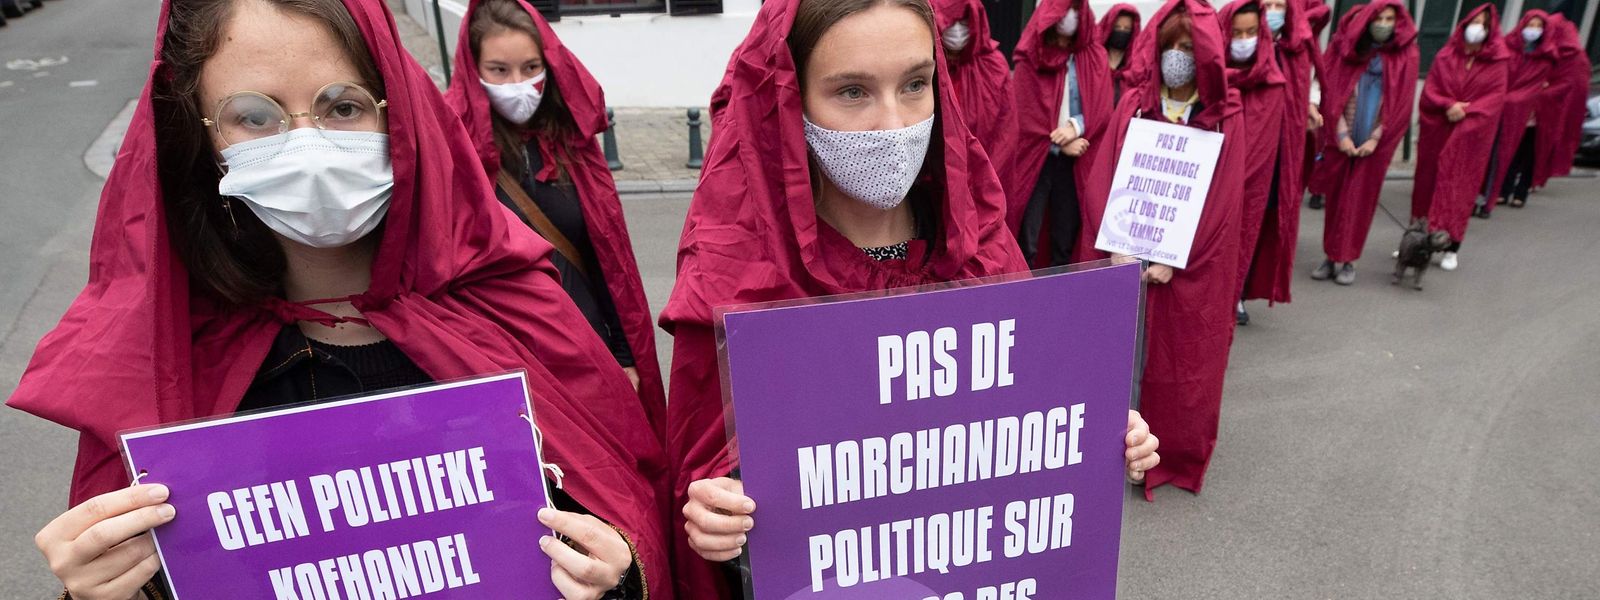 Relookées façon "The Handsmaid's Tale", des manifestantes ont défilé à Bruxelles contre le projet de loi sur l'IVG.